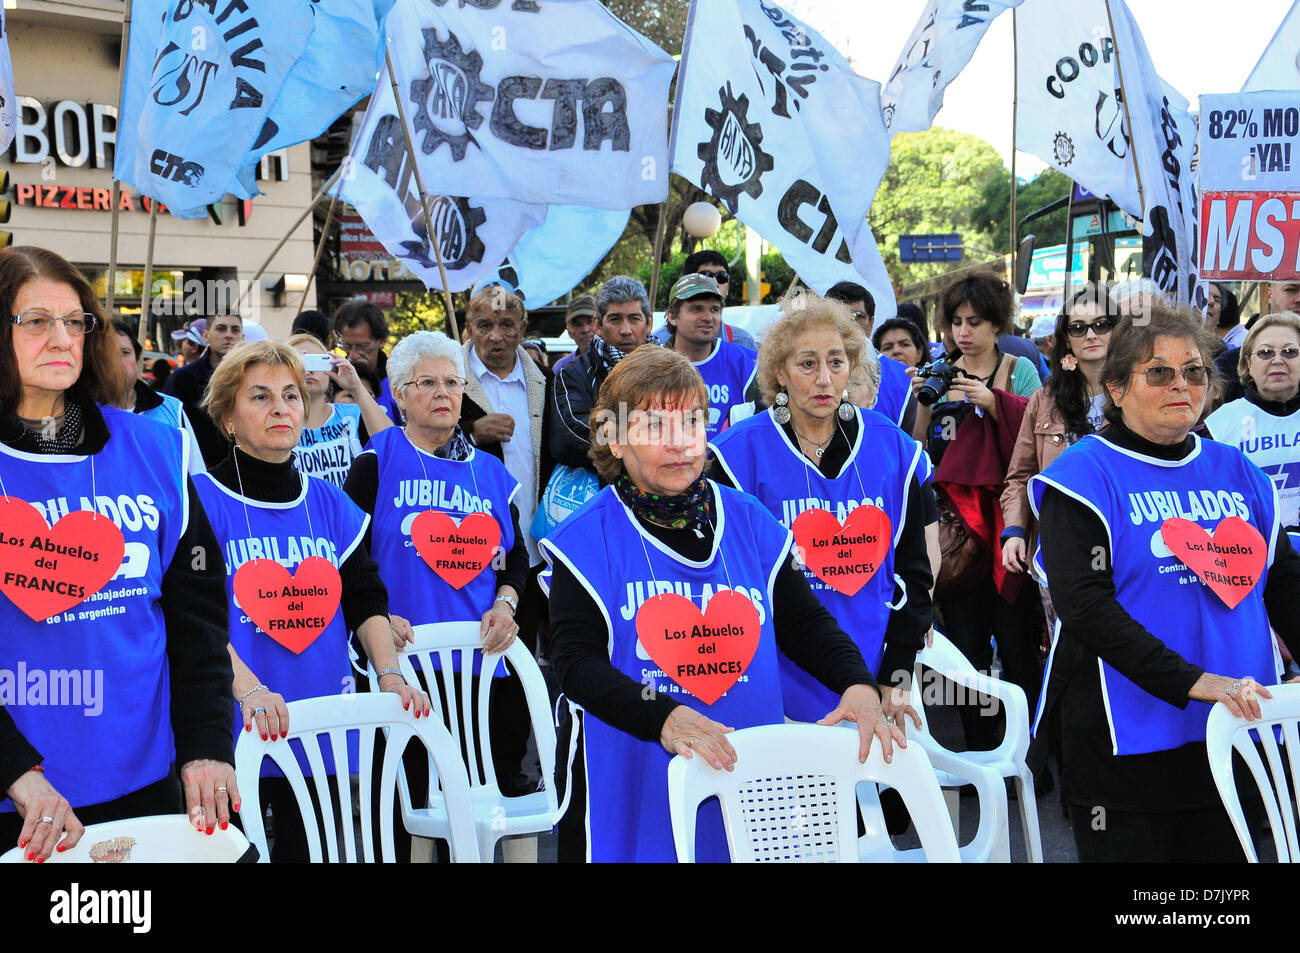 frente al congreso nacional de argentina se realizo una marcha reclamando aumento en los haberes jubilatorios, los que participaron de la misma lo hicieron de forma pacifica conmemorando las 1100 marchas de reclamo Stock Photo